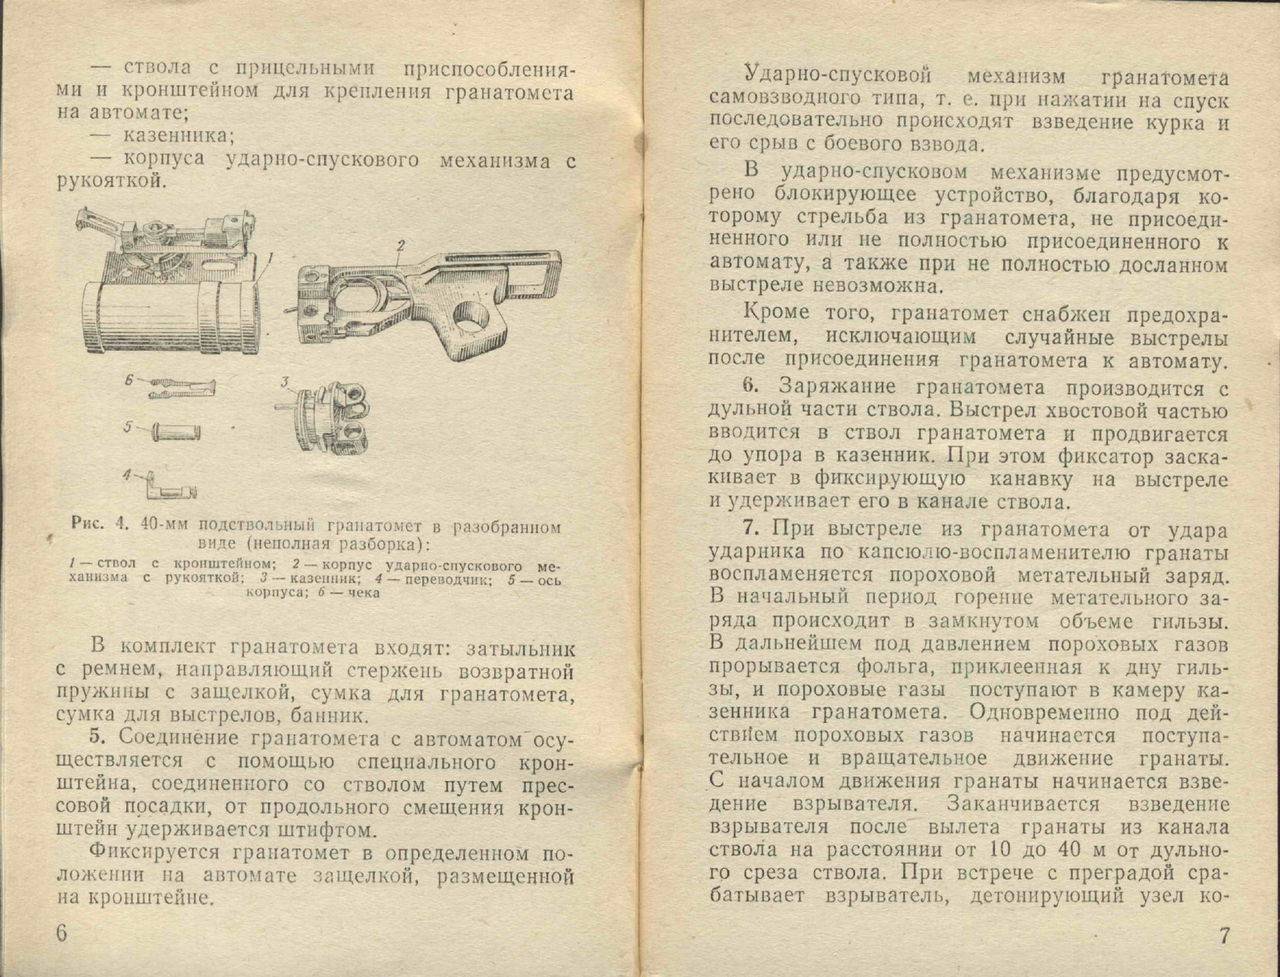 Гп-25 "костер"-40-мм подствольный гранатомет: обзор, фото, видео, характеристики.